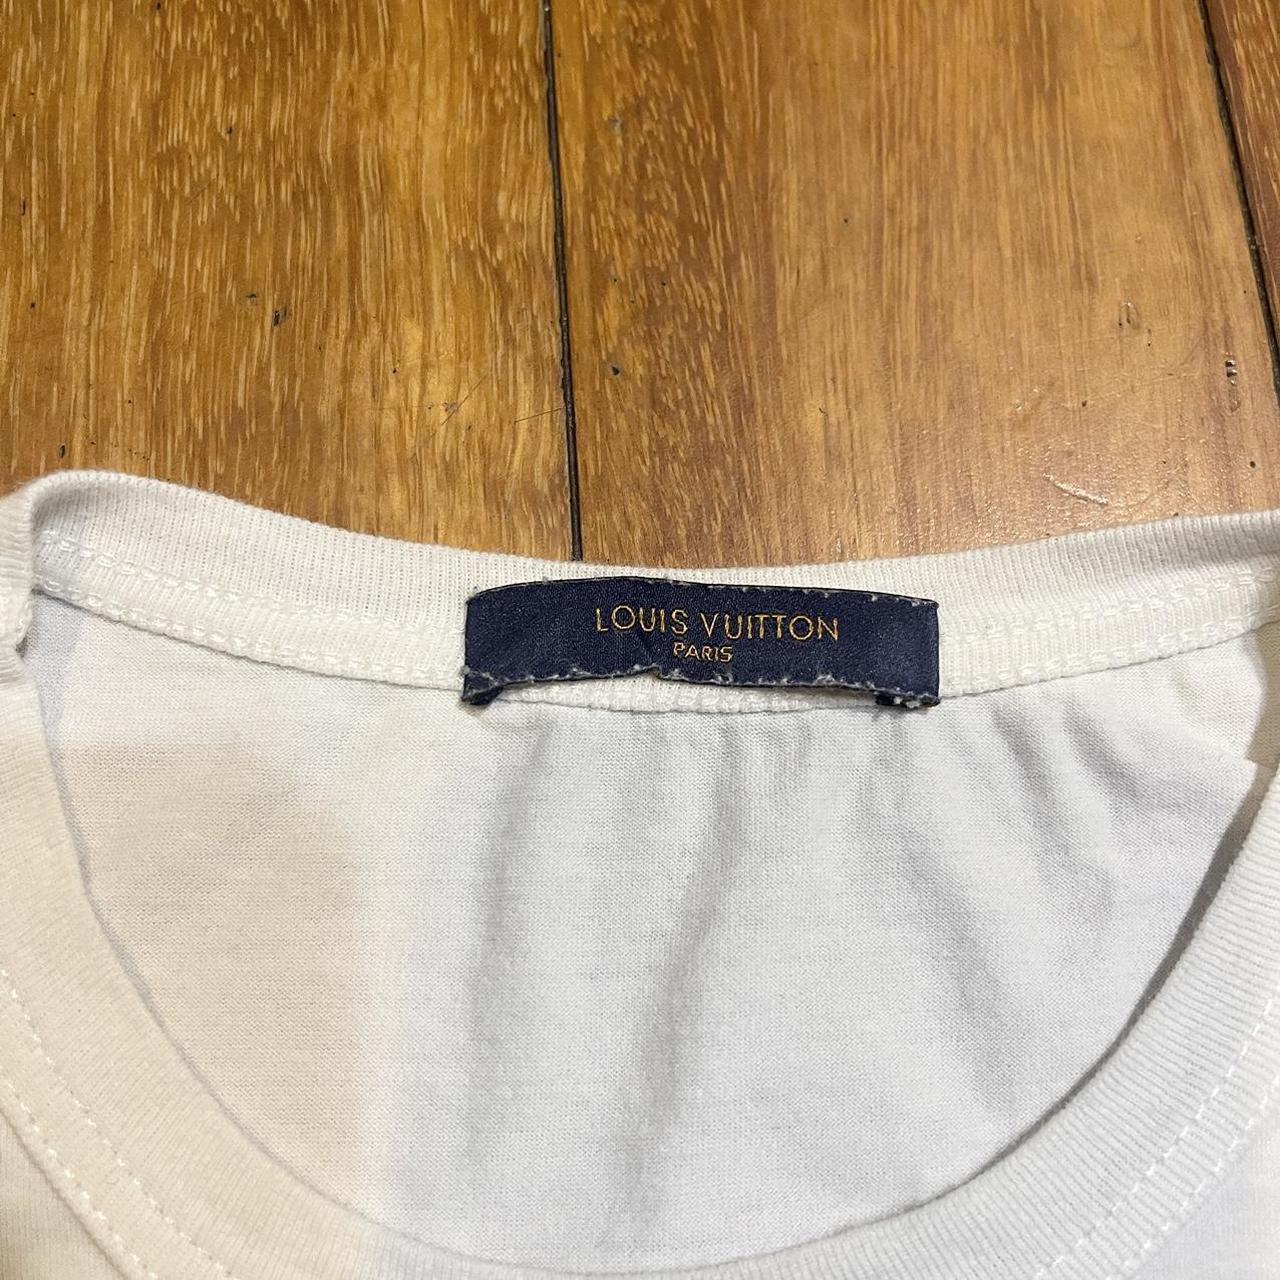 Authentic Louis Vuitton Shirt Tags